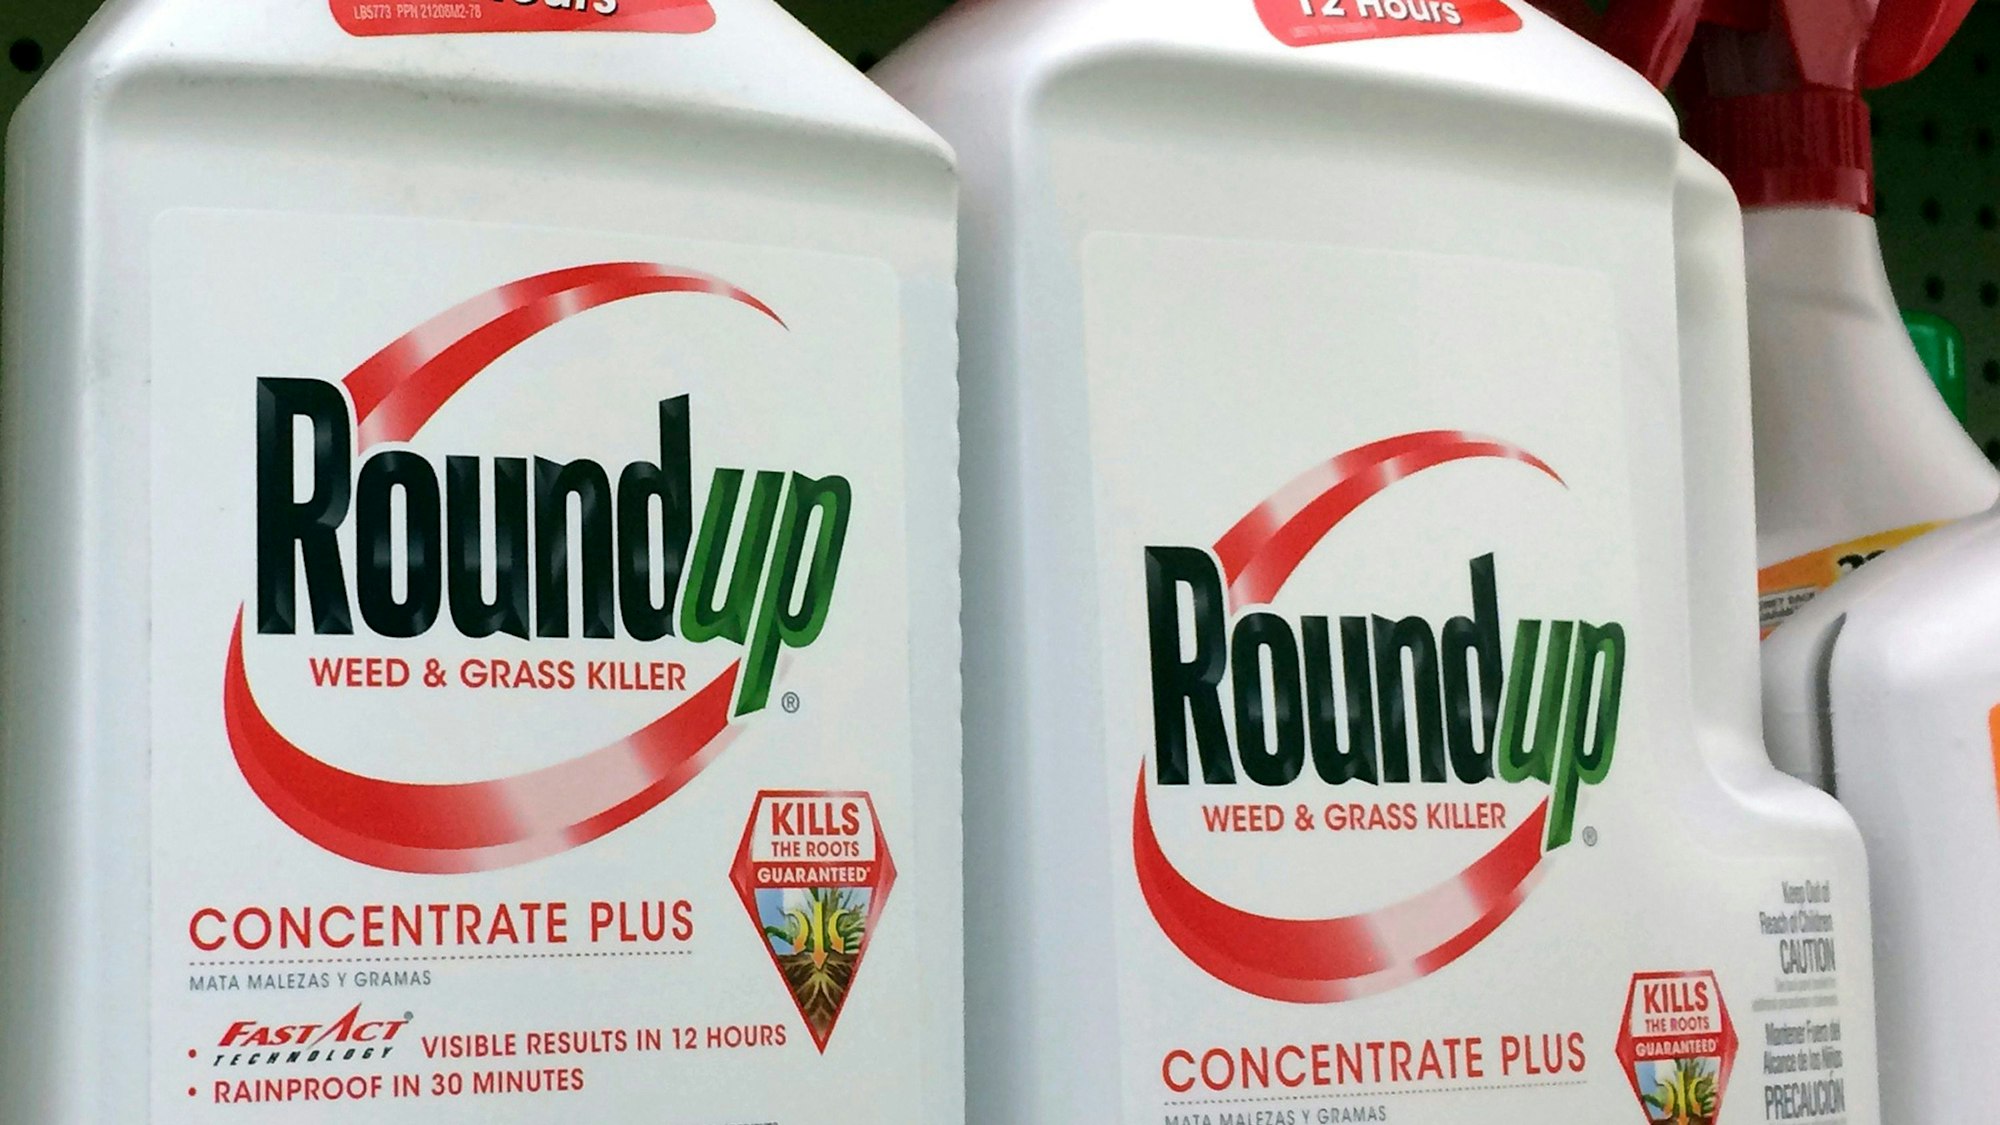 Behälter mit Roundup, ein glyphosathaltiges Unkrautvernichtungsmittel von Monsanto, stehen in einem Regal in einem Baumarkt.